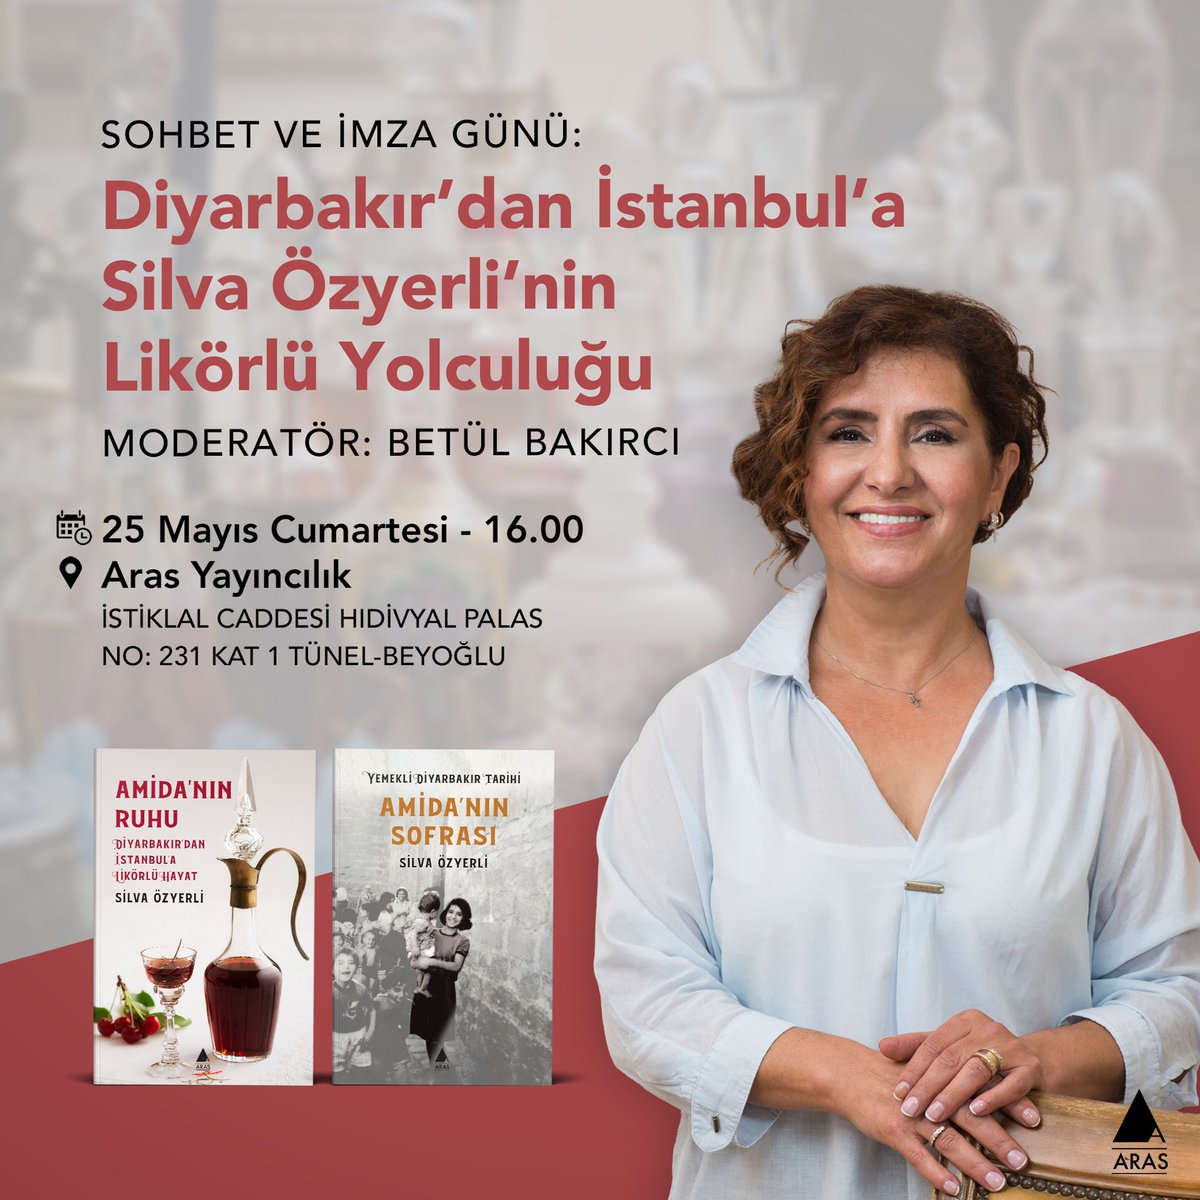 Silva Özyerli’nin ikinci kitabı “Amida’nın Ruhu”, memleketi Diyarbakır’dan İstanbul’a uzanan likörlü yolculuğunu, aile tarihinden hatıralarla harmanladığı, eşsiz bir çalışma. 25 Mayıs Cumartesi, @sozyerli’nin katılımıyla gerçekleşecek etkinliğe tüm okurlarımızı bekleriz.